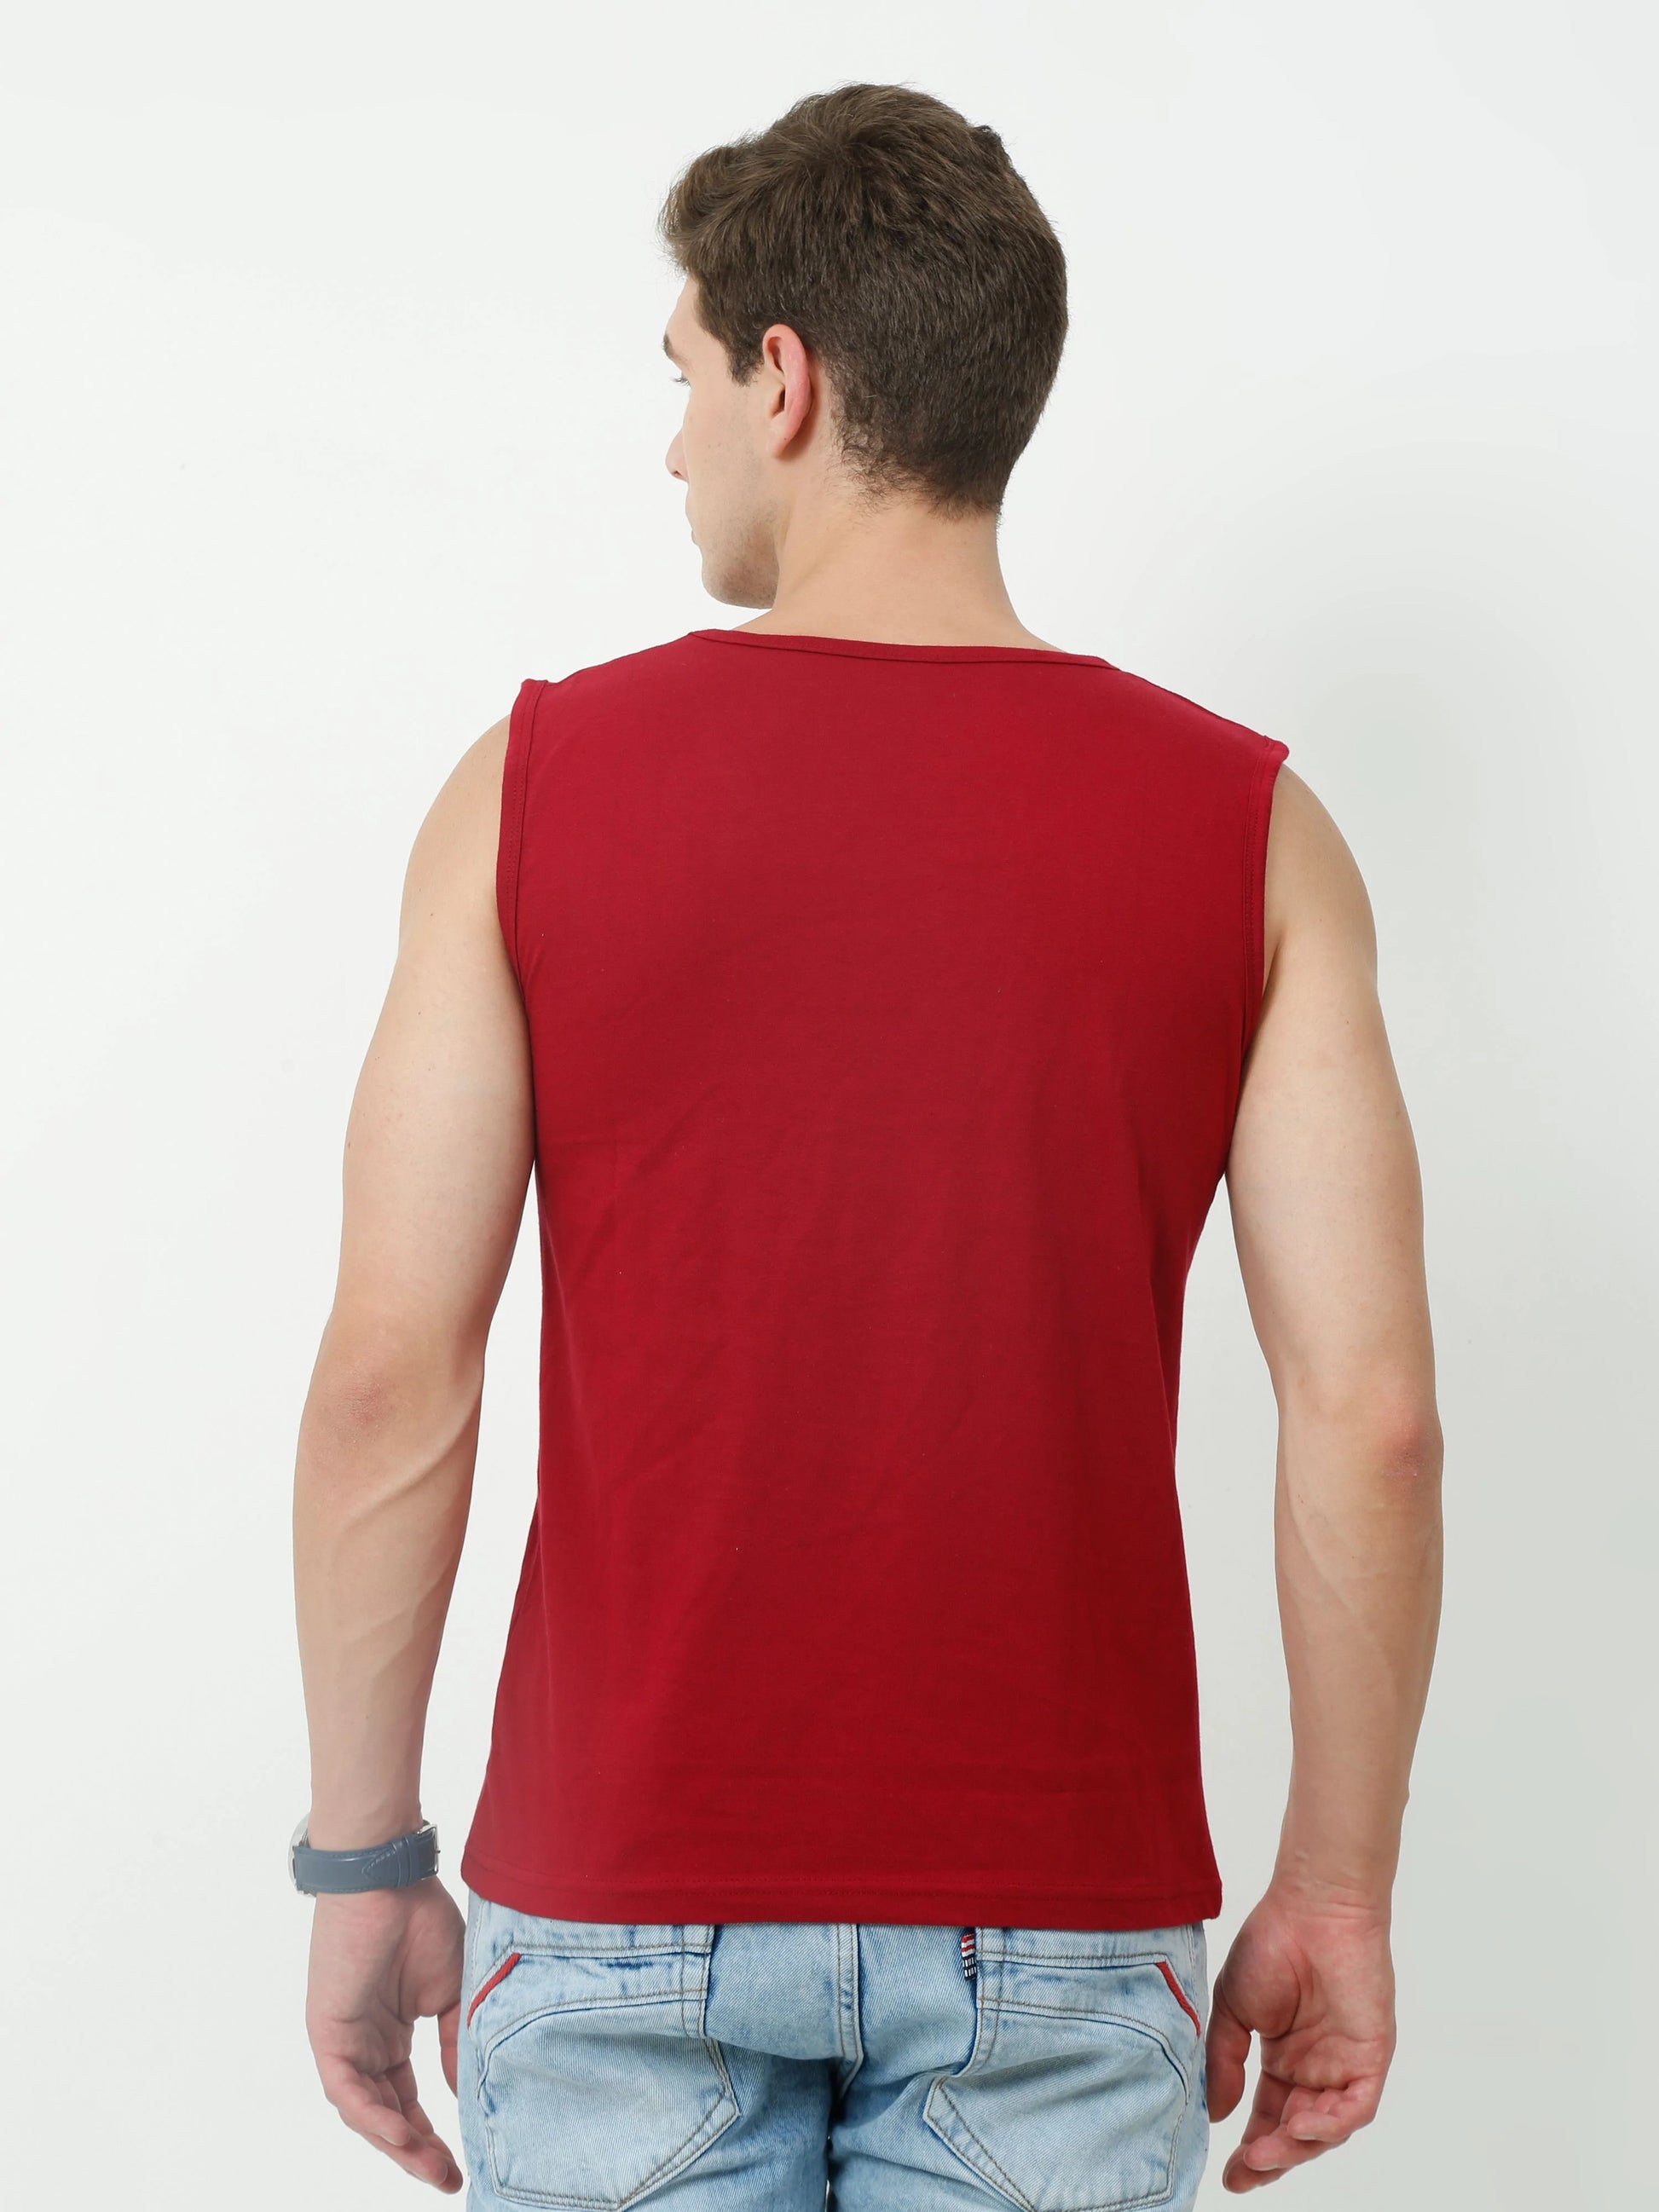 Fleximaa Men's Cotton Printed Sleeveless T-Shirt - fleximaa-so